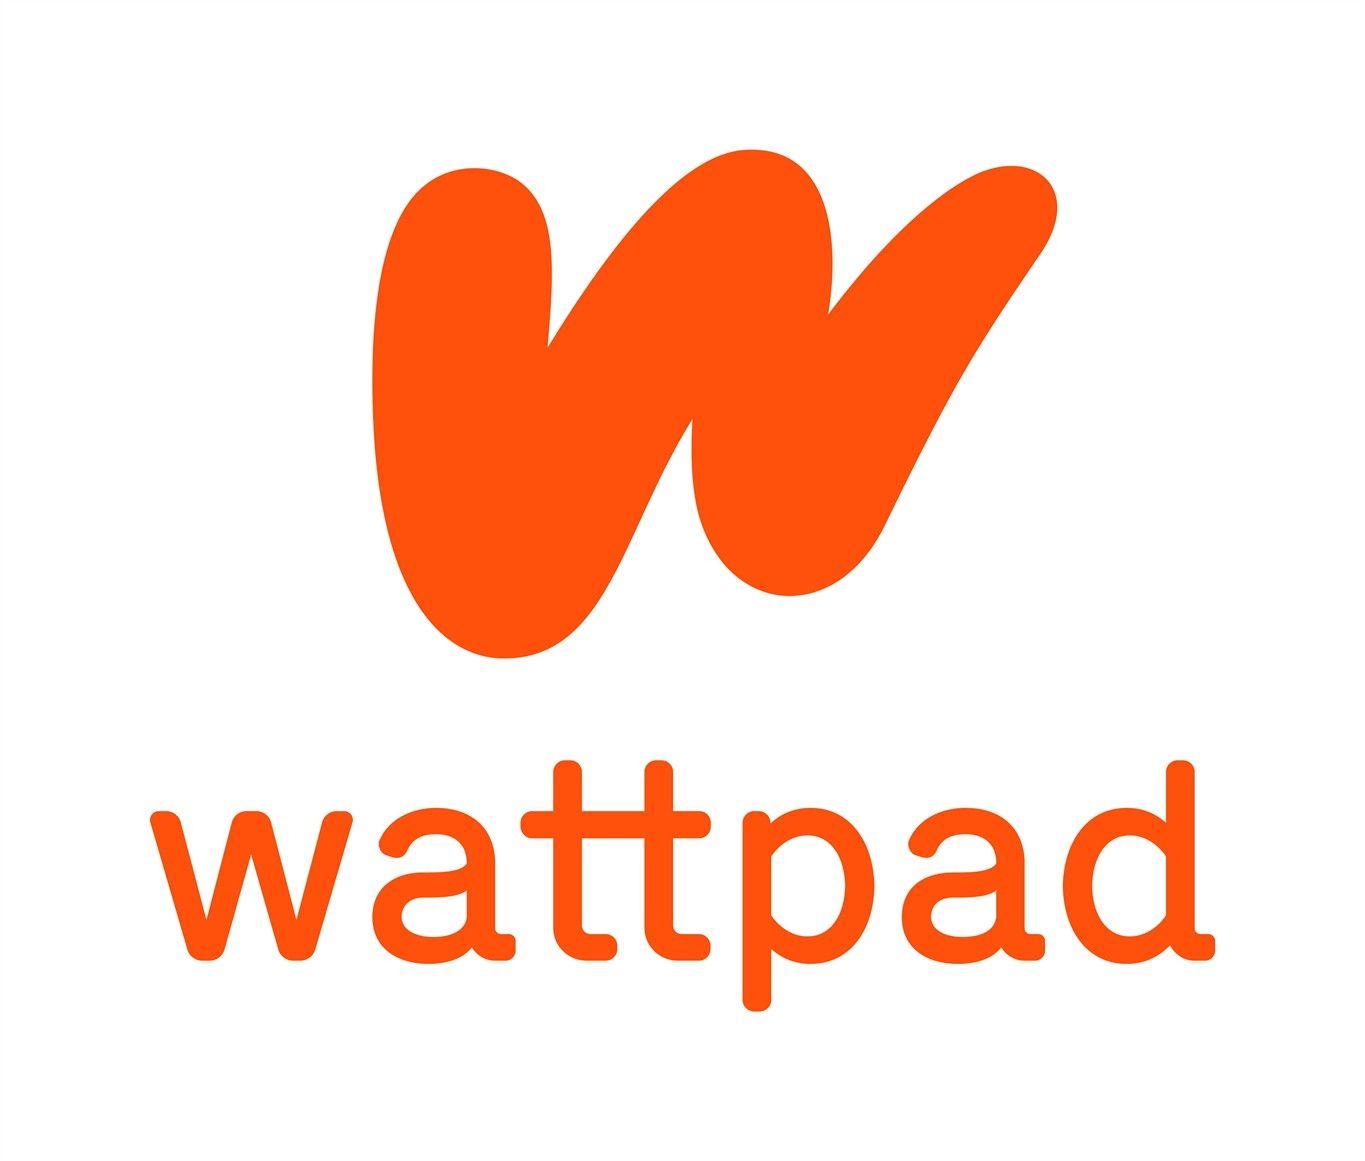 Wattpad Logo Logodix Wattpad and transparent png images free download. wattpad logo logodix